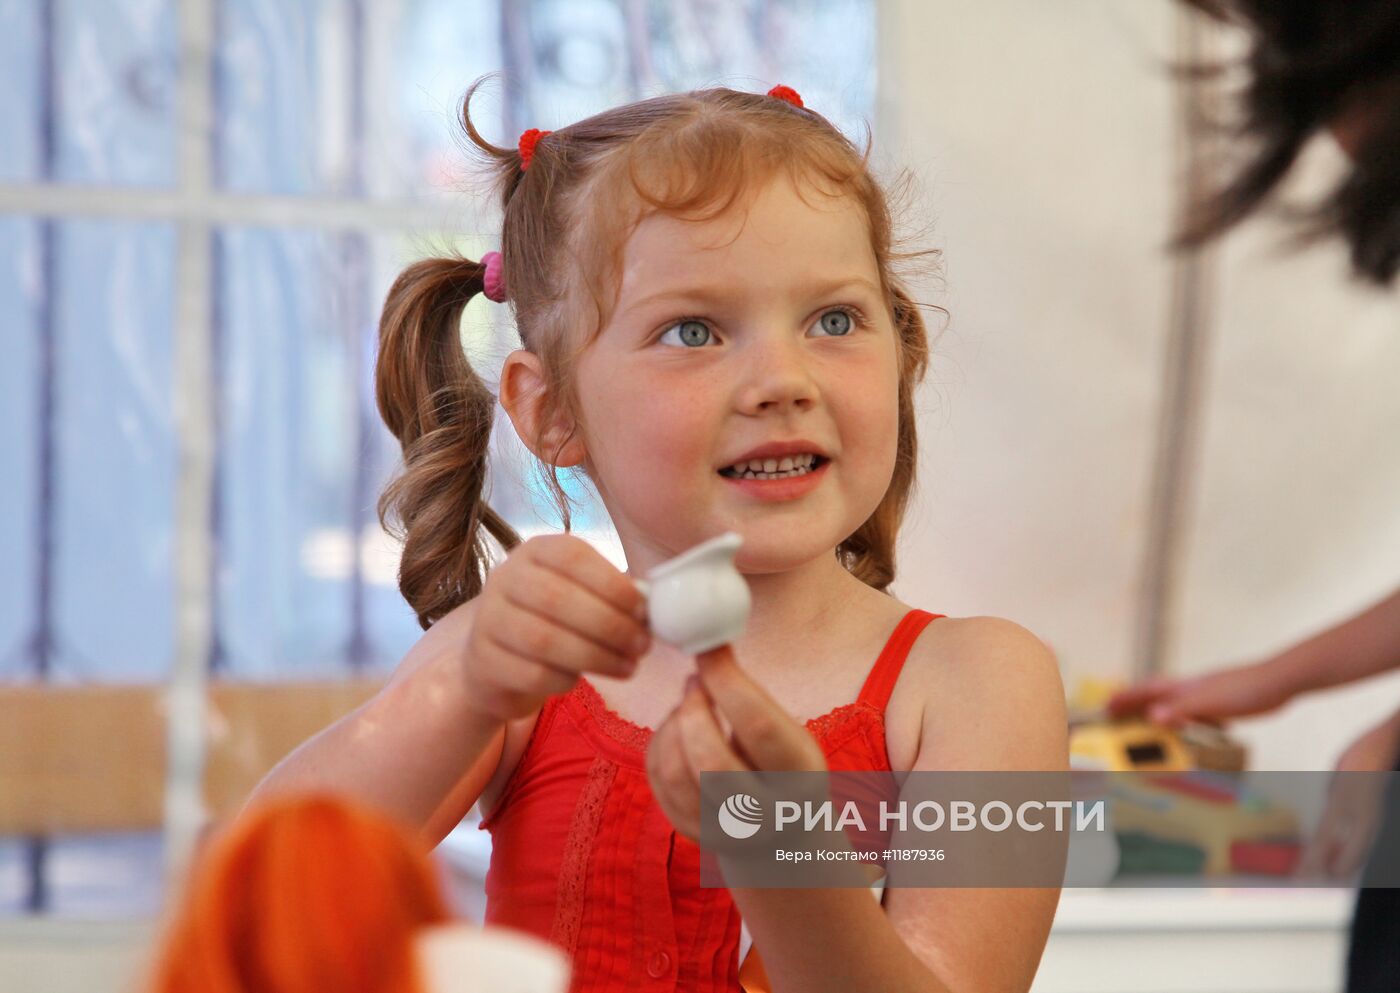 Топ-модель Наталья Водянова открыла детскую площадку в Крымске